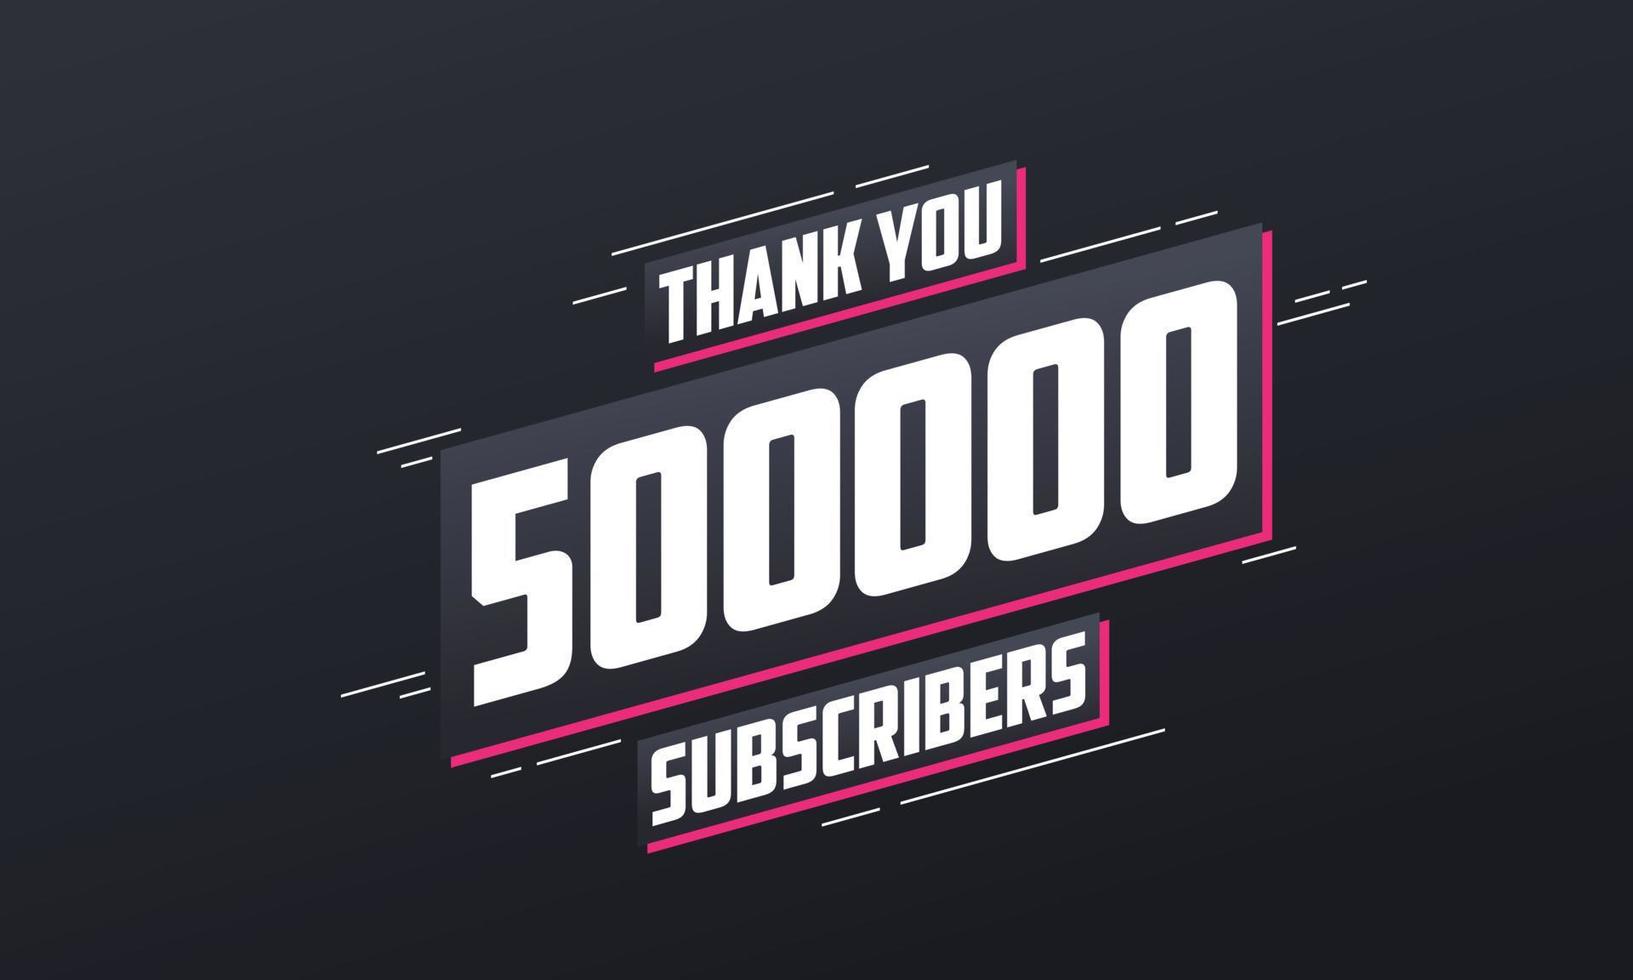 gracias 500000 suscriptores celebración de 500k suscriptores. vector